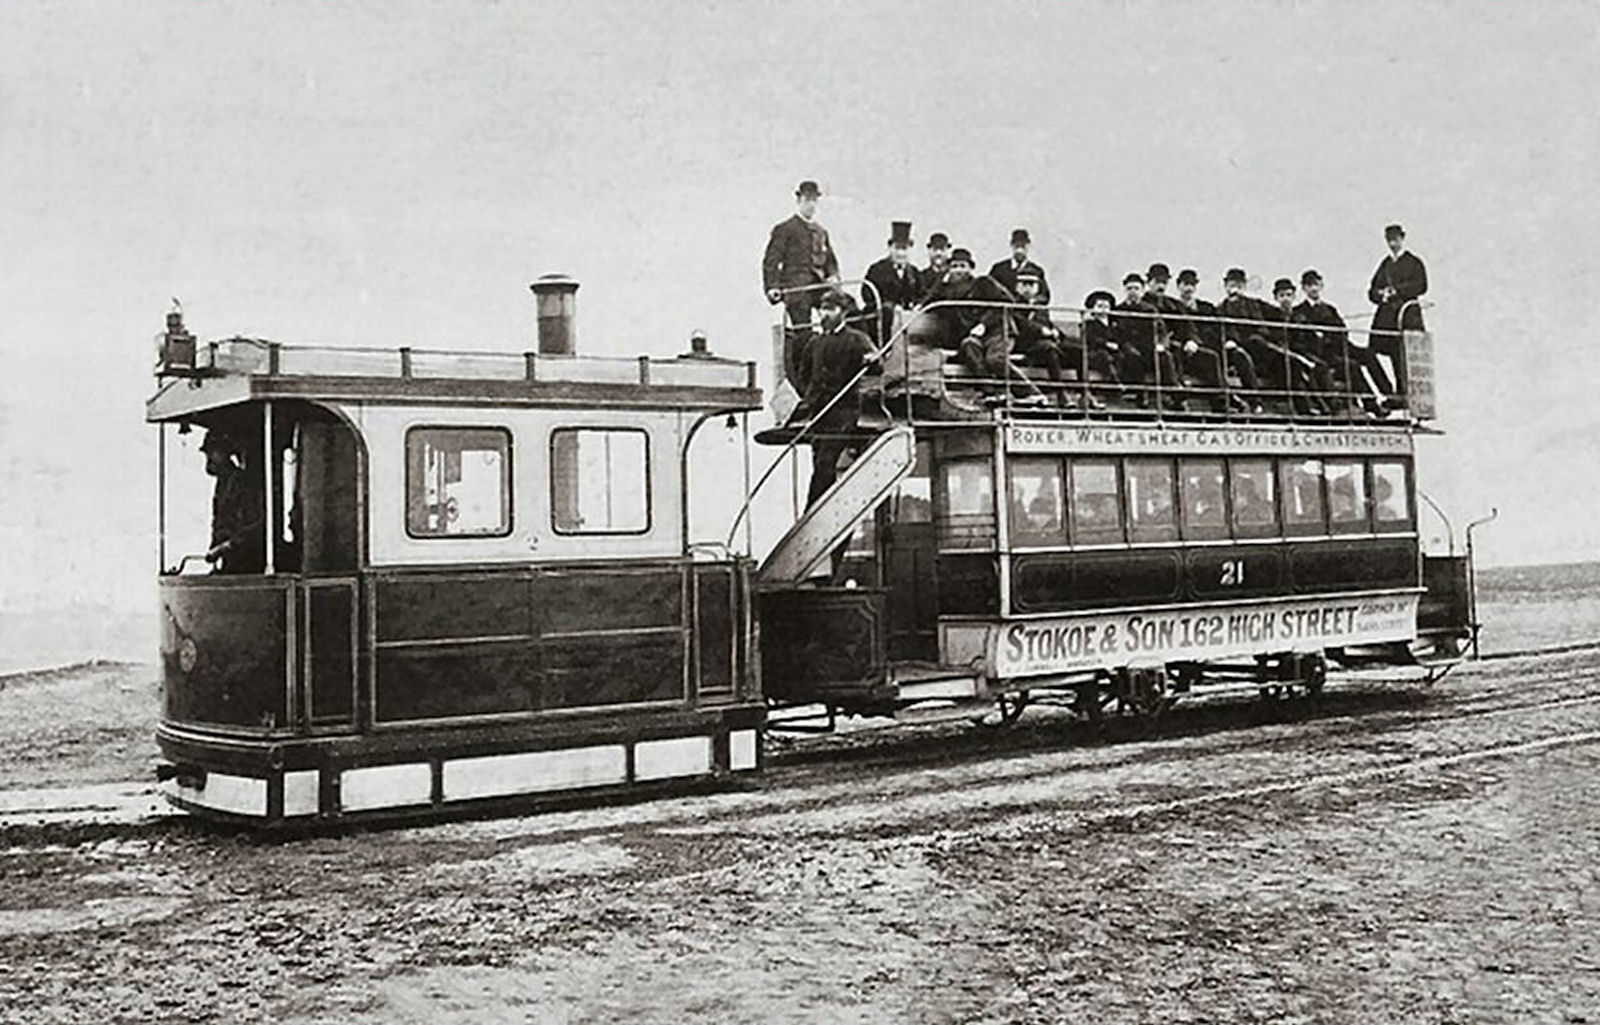 First transport. Трамвай Конка 19 века. Омнибус Конка паровичок трамвай. Паровые трамваи в Париже 19 века. Первый трамвай Германия 1881.